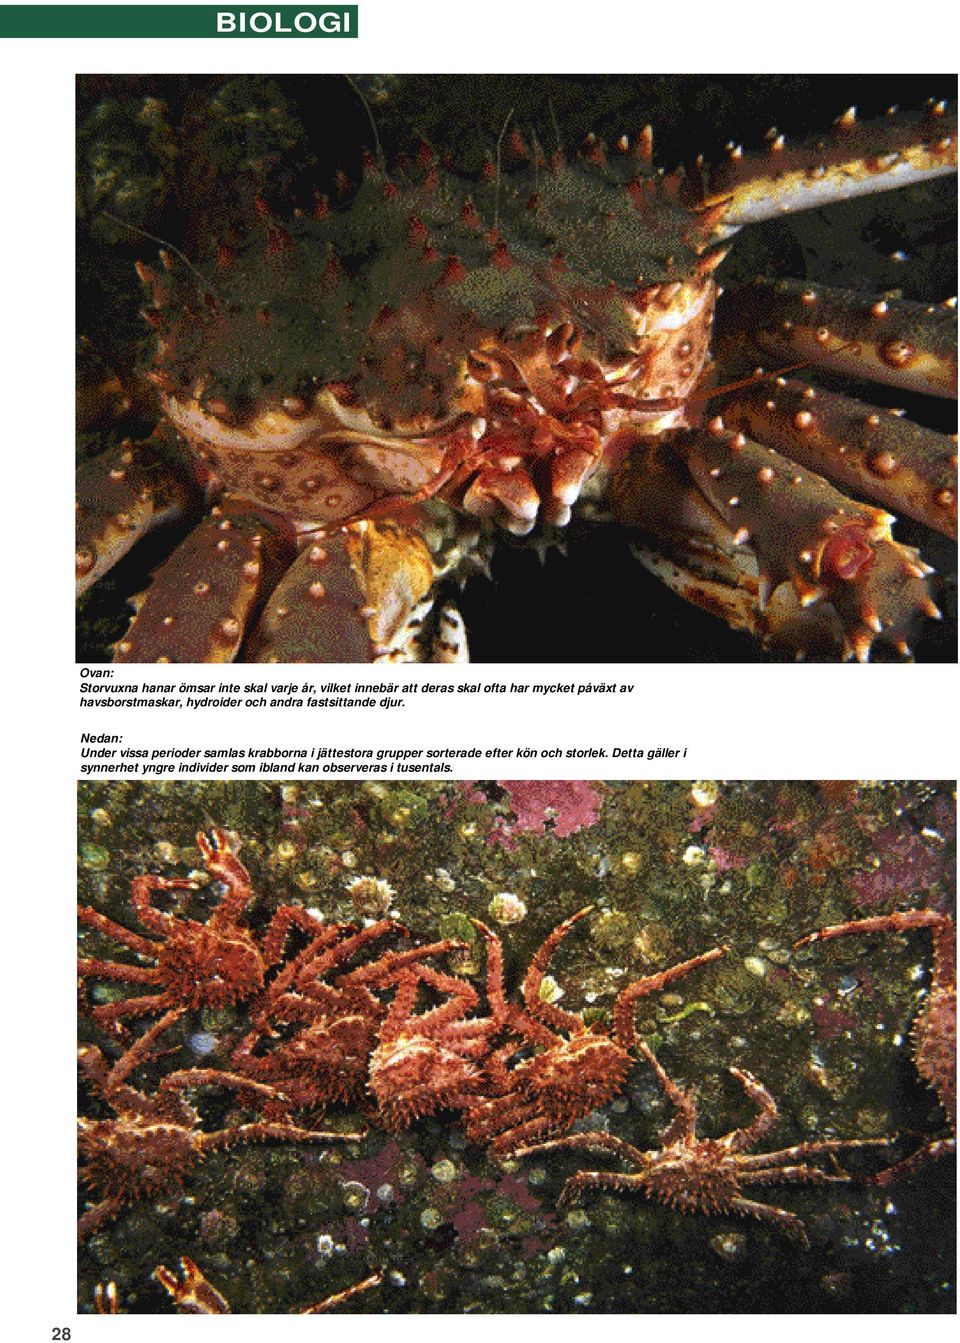 Nedan: Under vissa perioder samlas krabborna i jättestora grupper sorterade efter kön